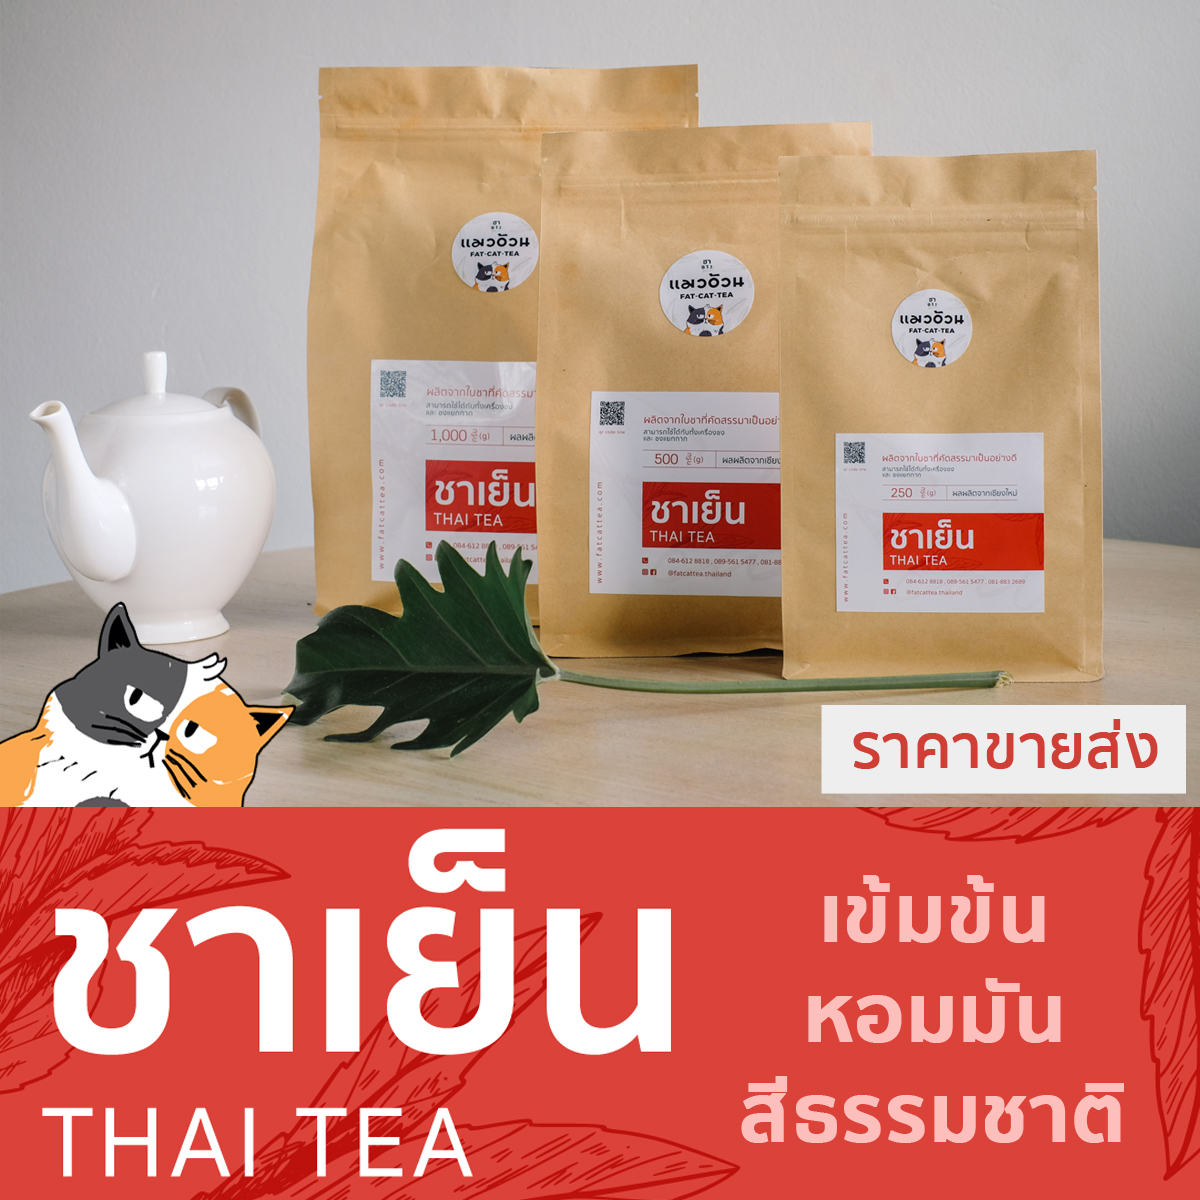 ชาแดงไทย 1000g สำหรับทำ ชาเย็น ชามะนาว เข้มข้น หอมมัน Classic Thai Tea ชาตราแมวอ้วน